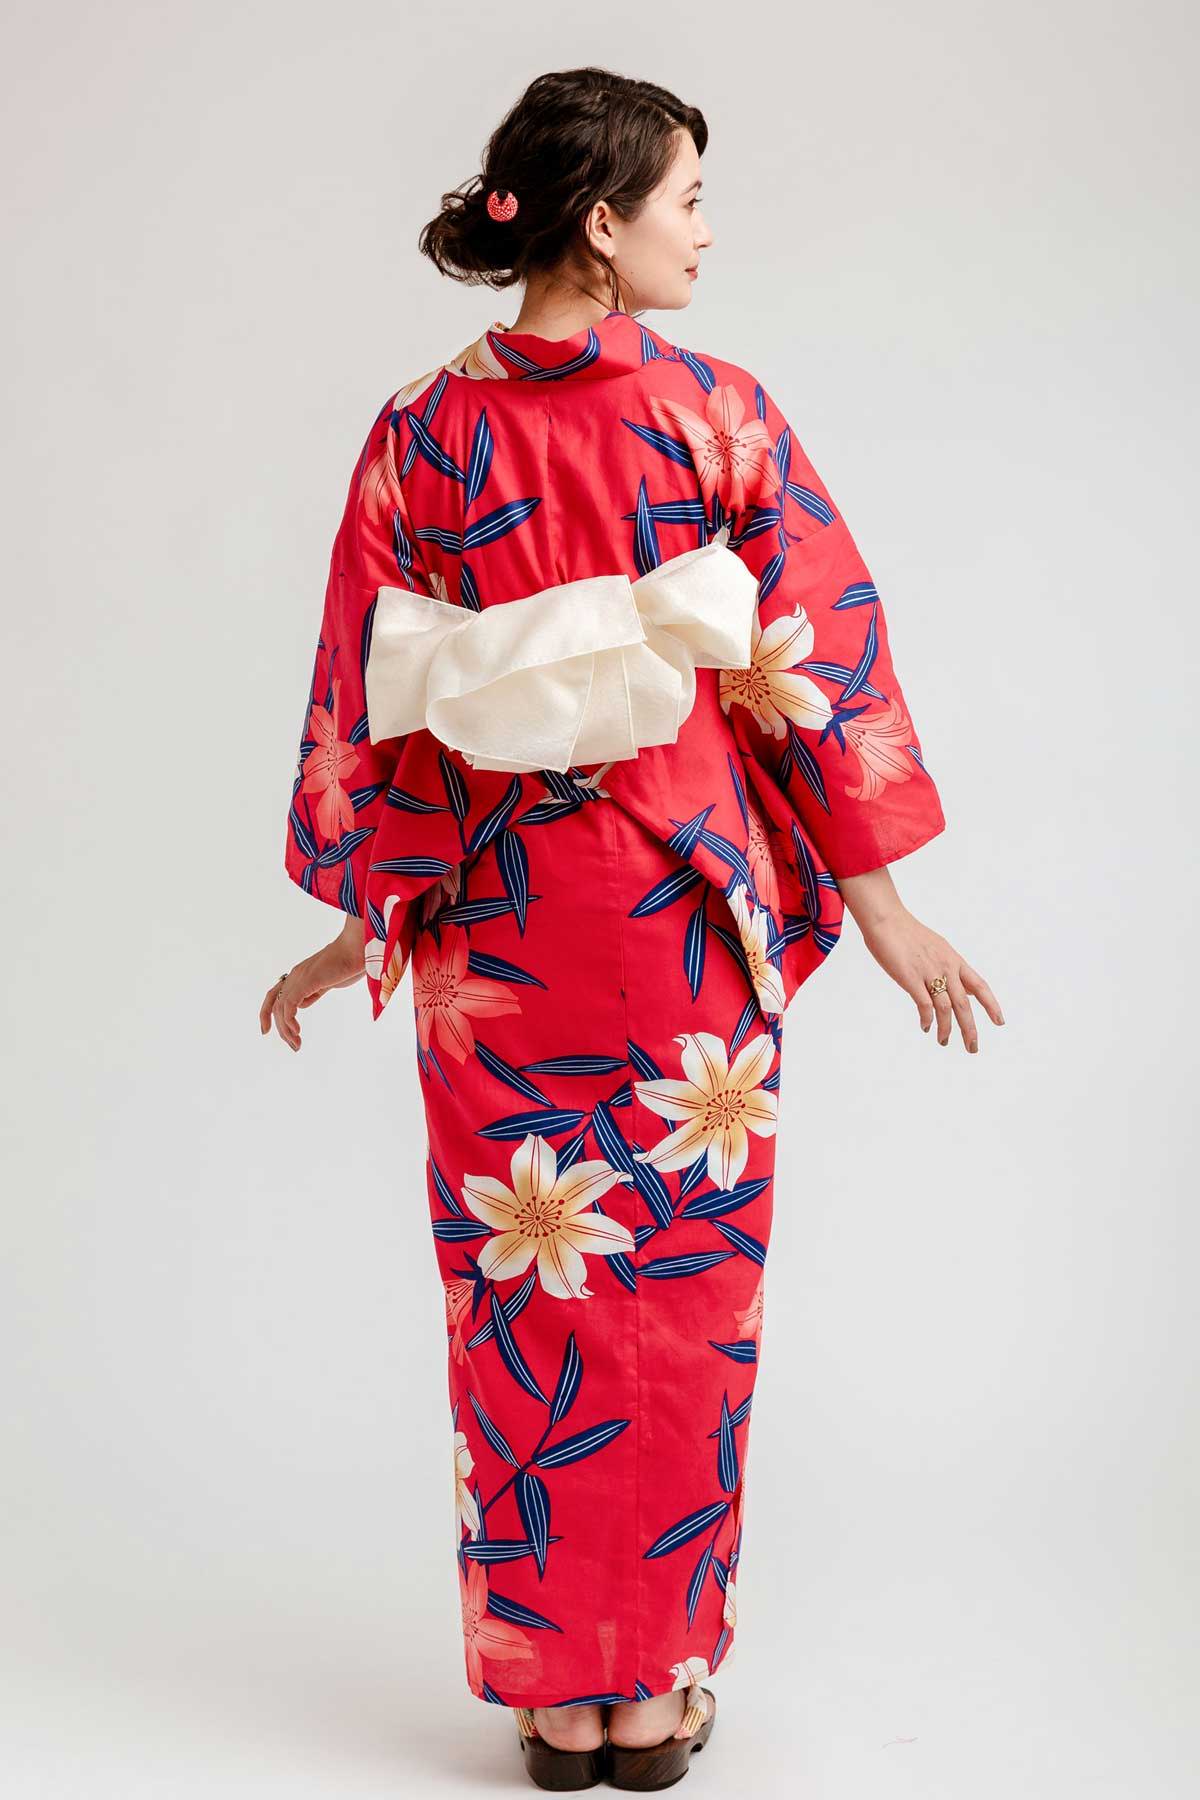 Red Women's Kimono Yukata Gown Japanese Floral Robe Haori Dress with Obi 